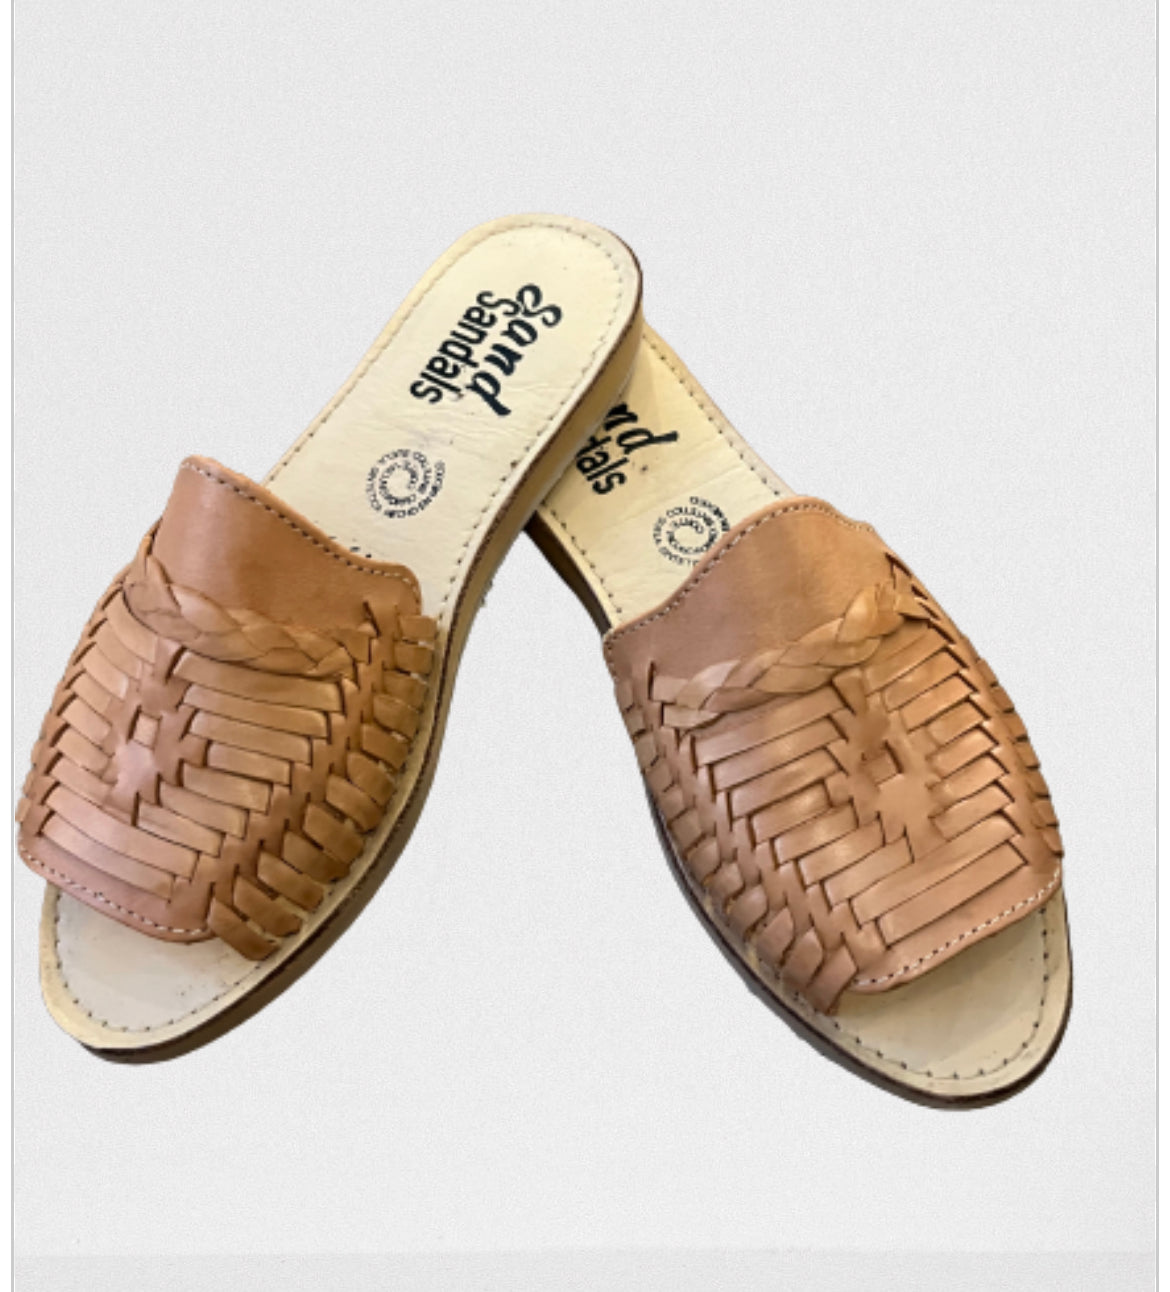 973/ Tan sandal